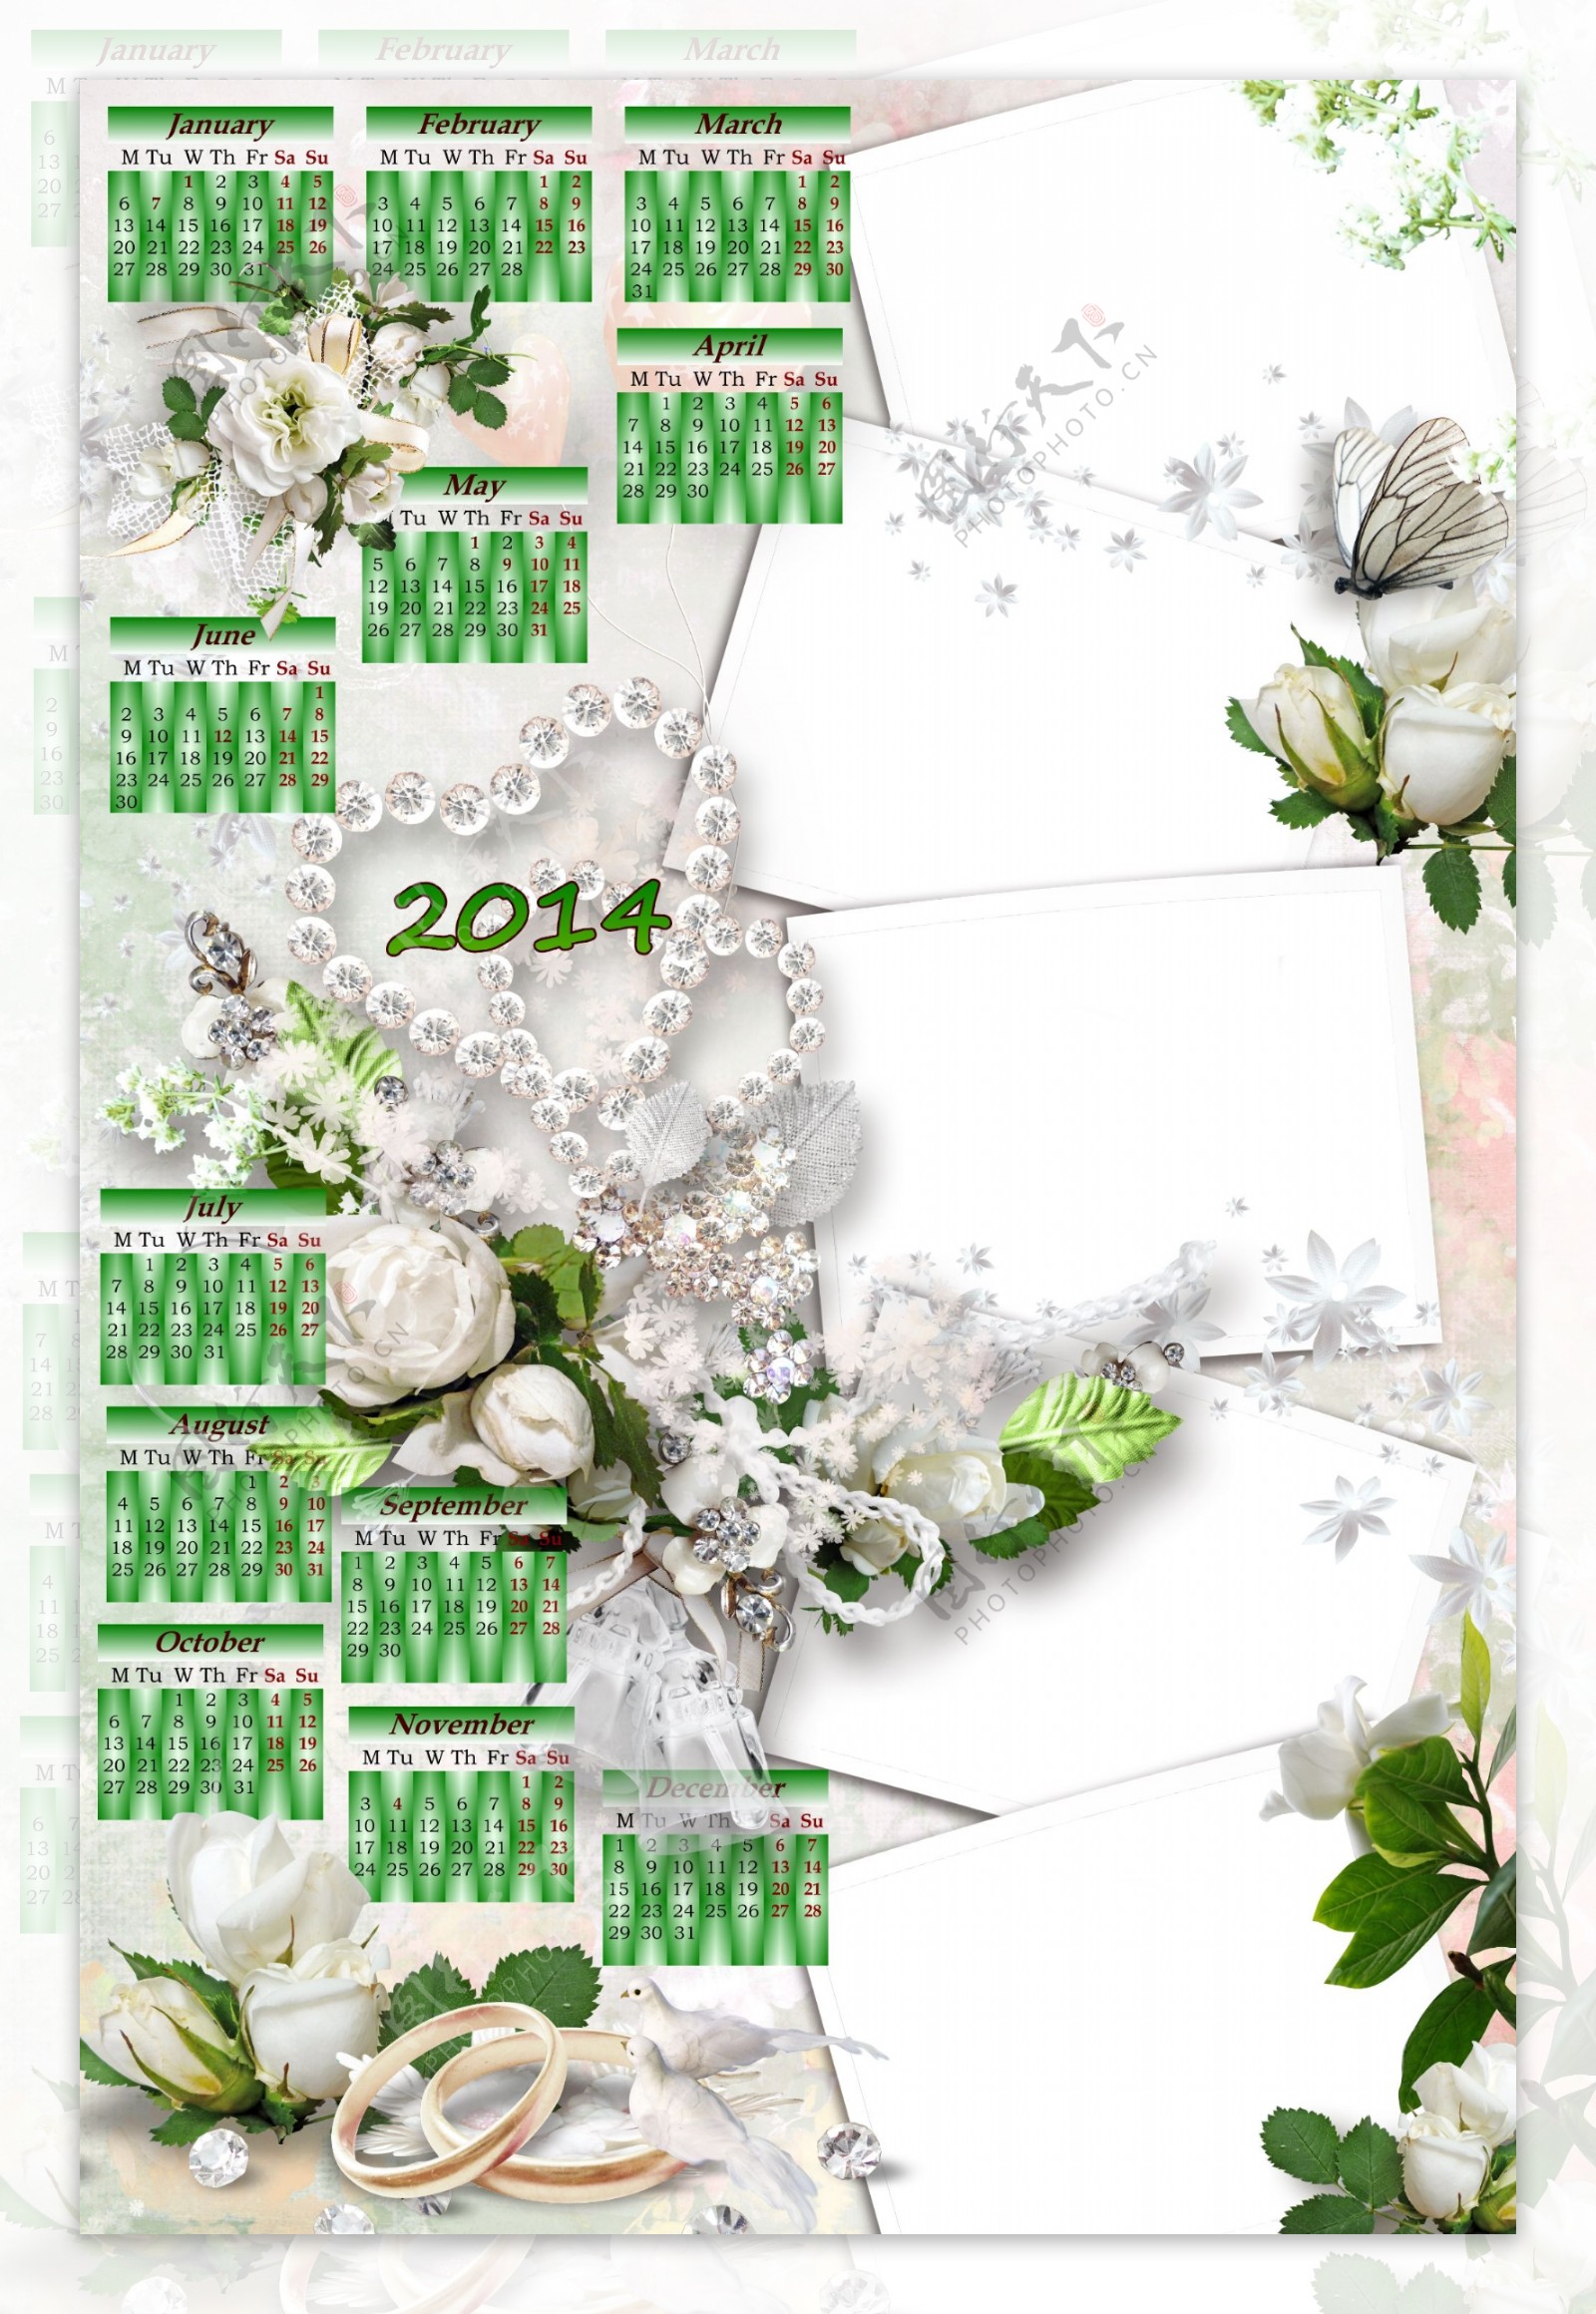 2014年婚礼日历图片